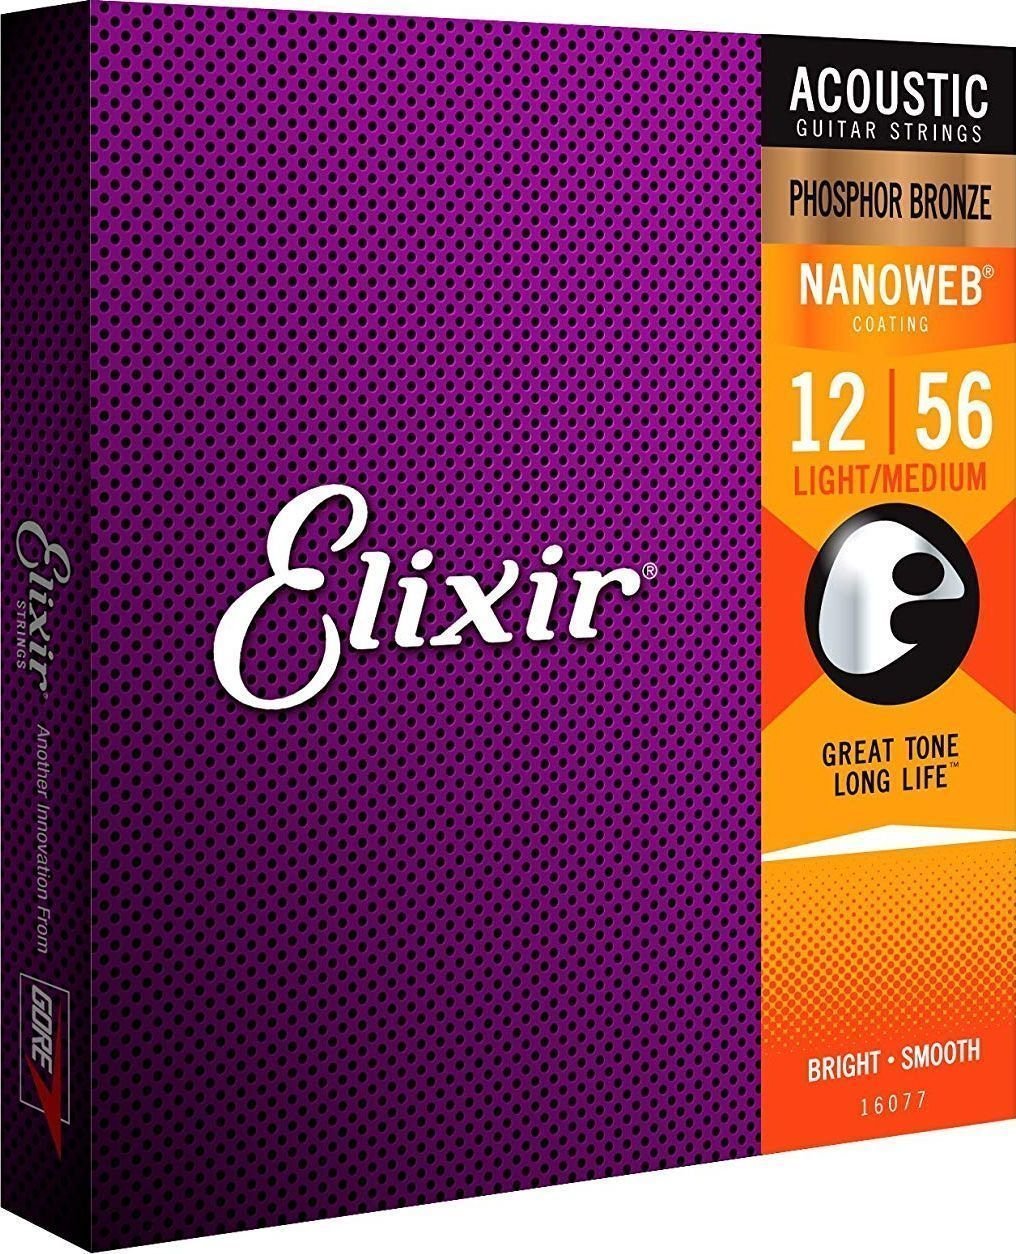 Strune za akustično kitaro Elixir 16077 Nanoweb 12-56